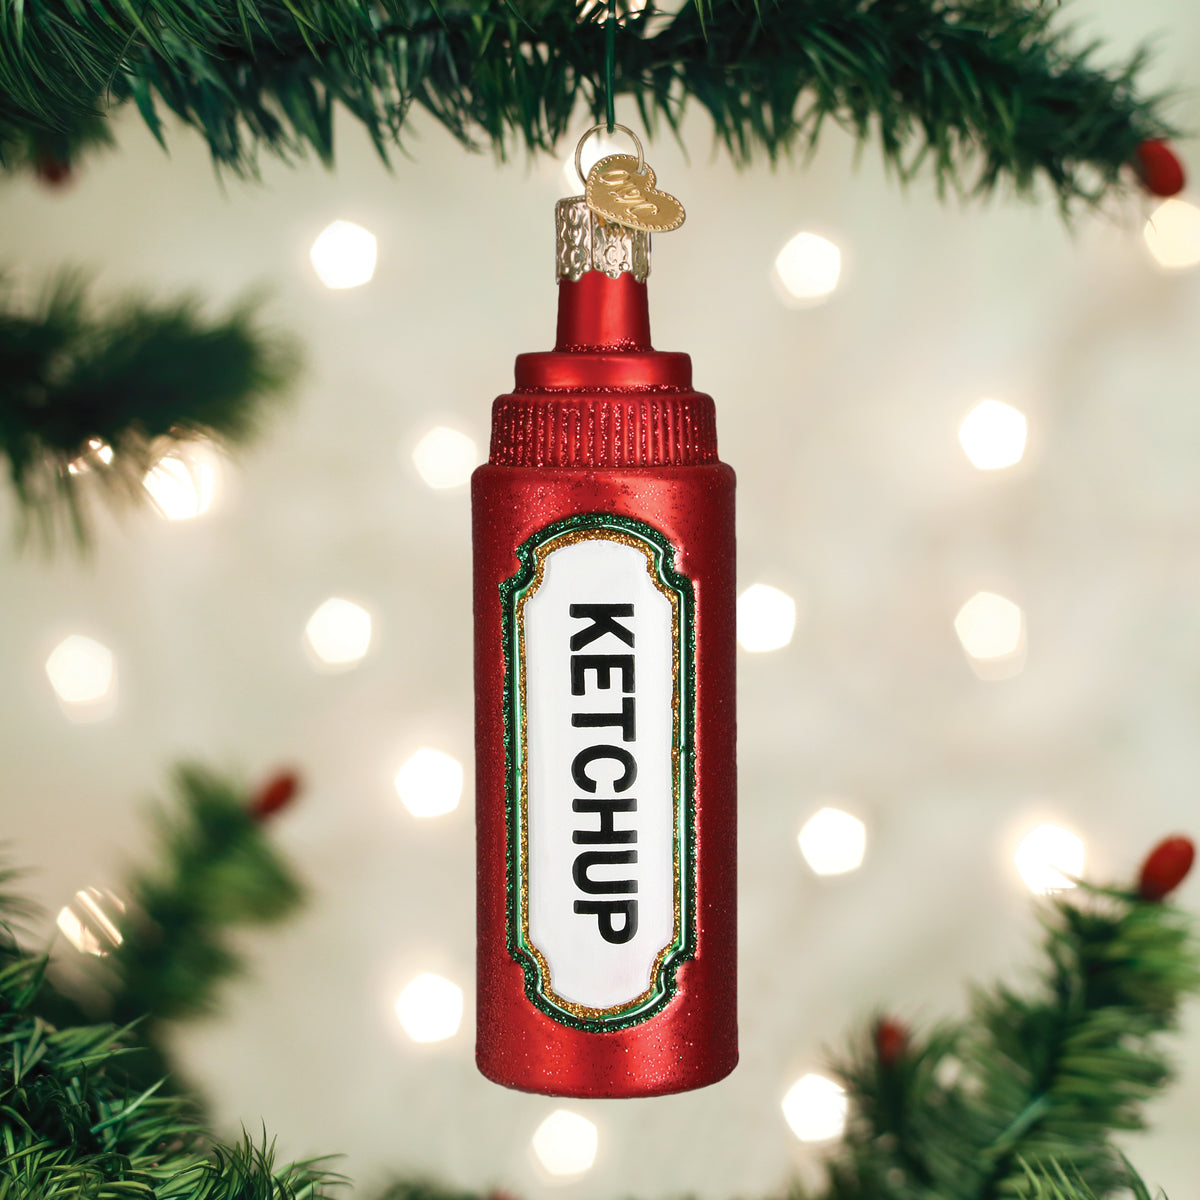 Ketchup Ornament